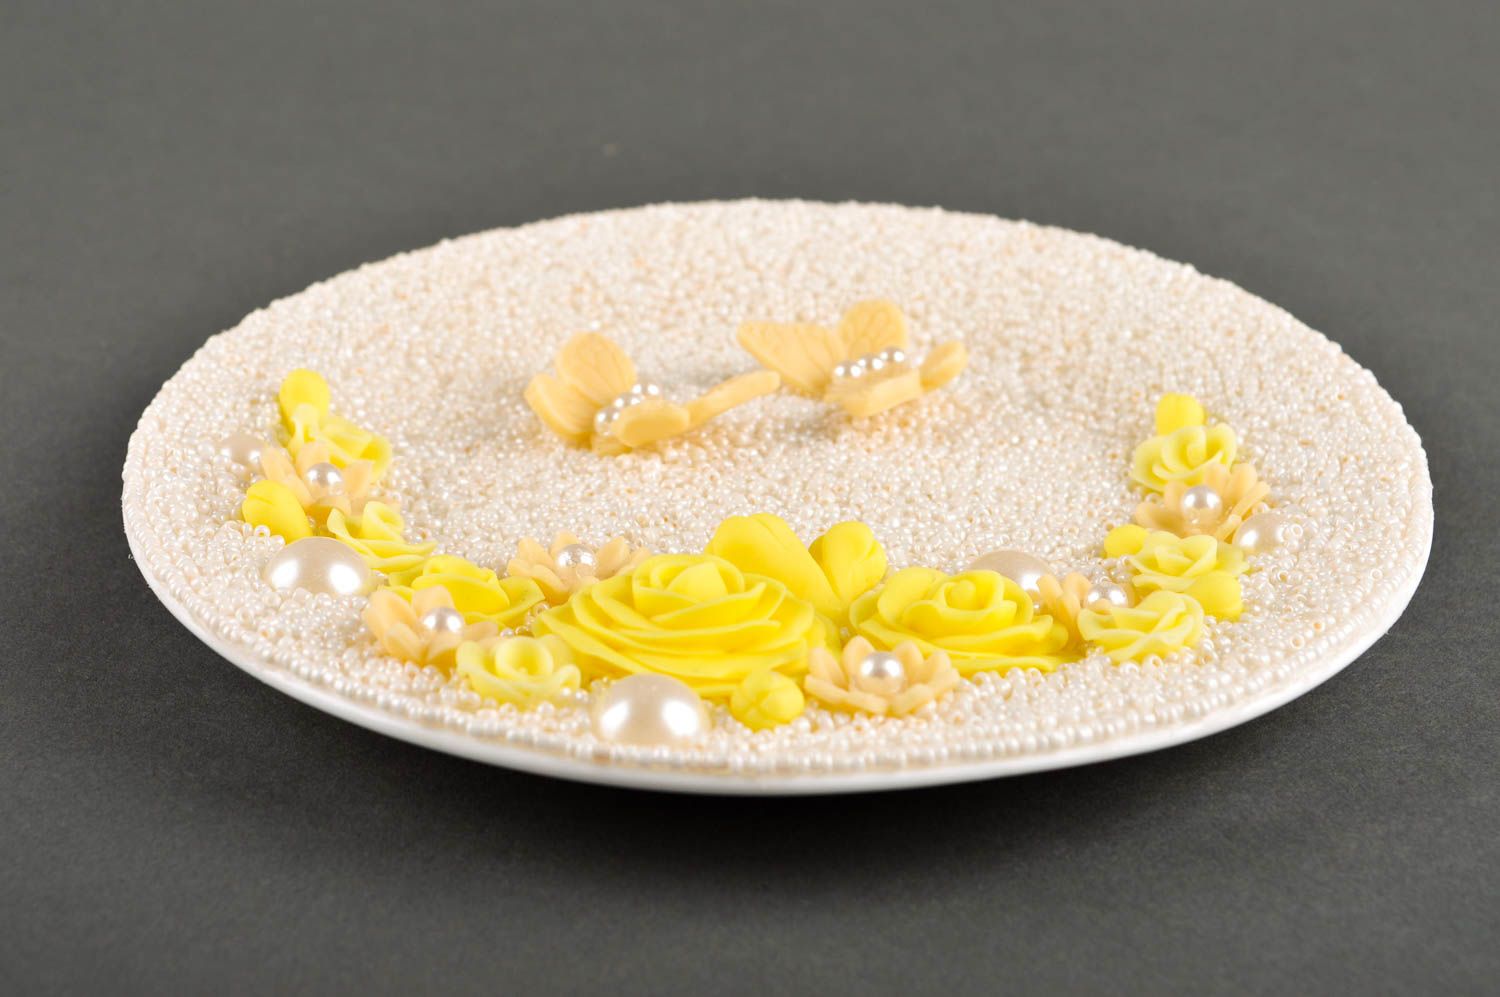 Керамическая тарелка ручной работы декоративная тарелка декор для дома фото 4